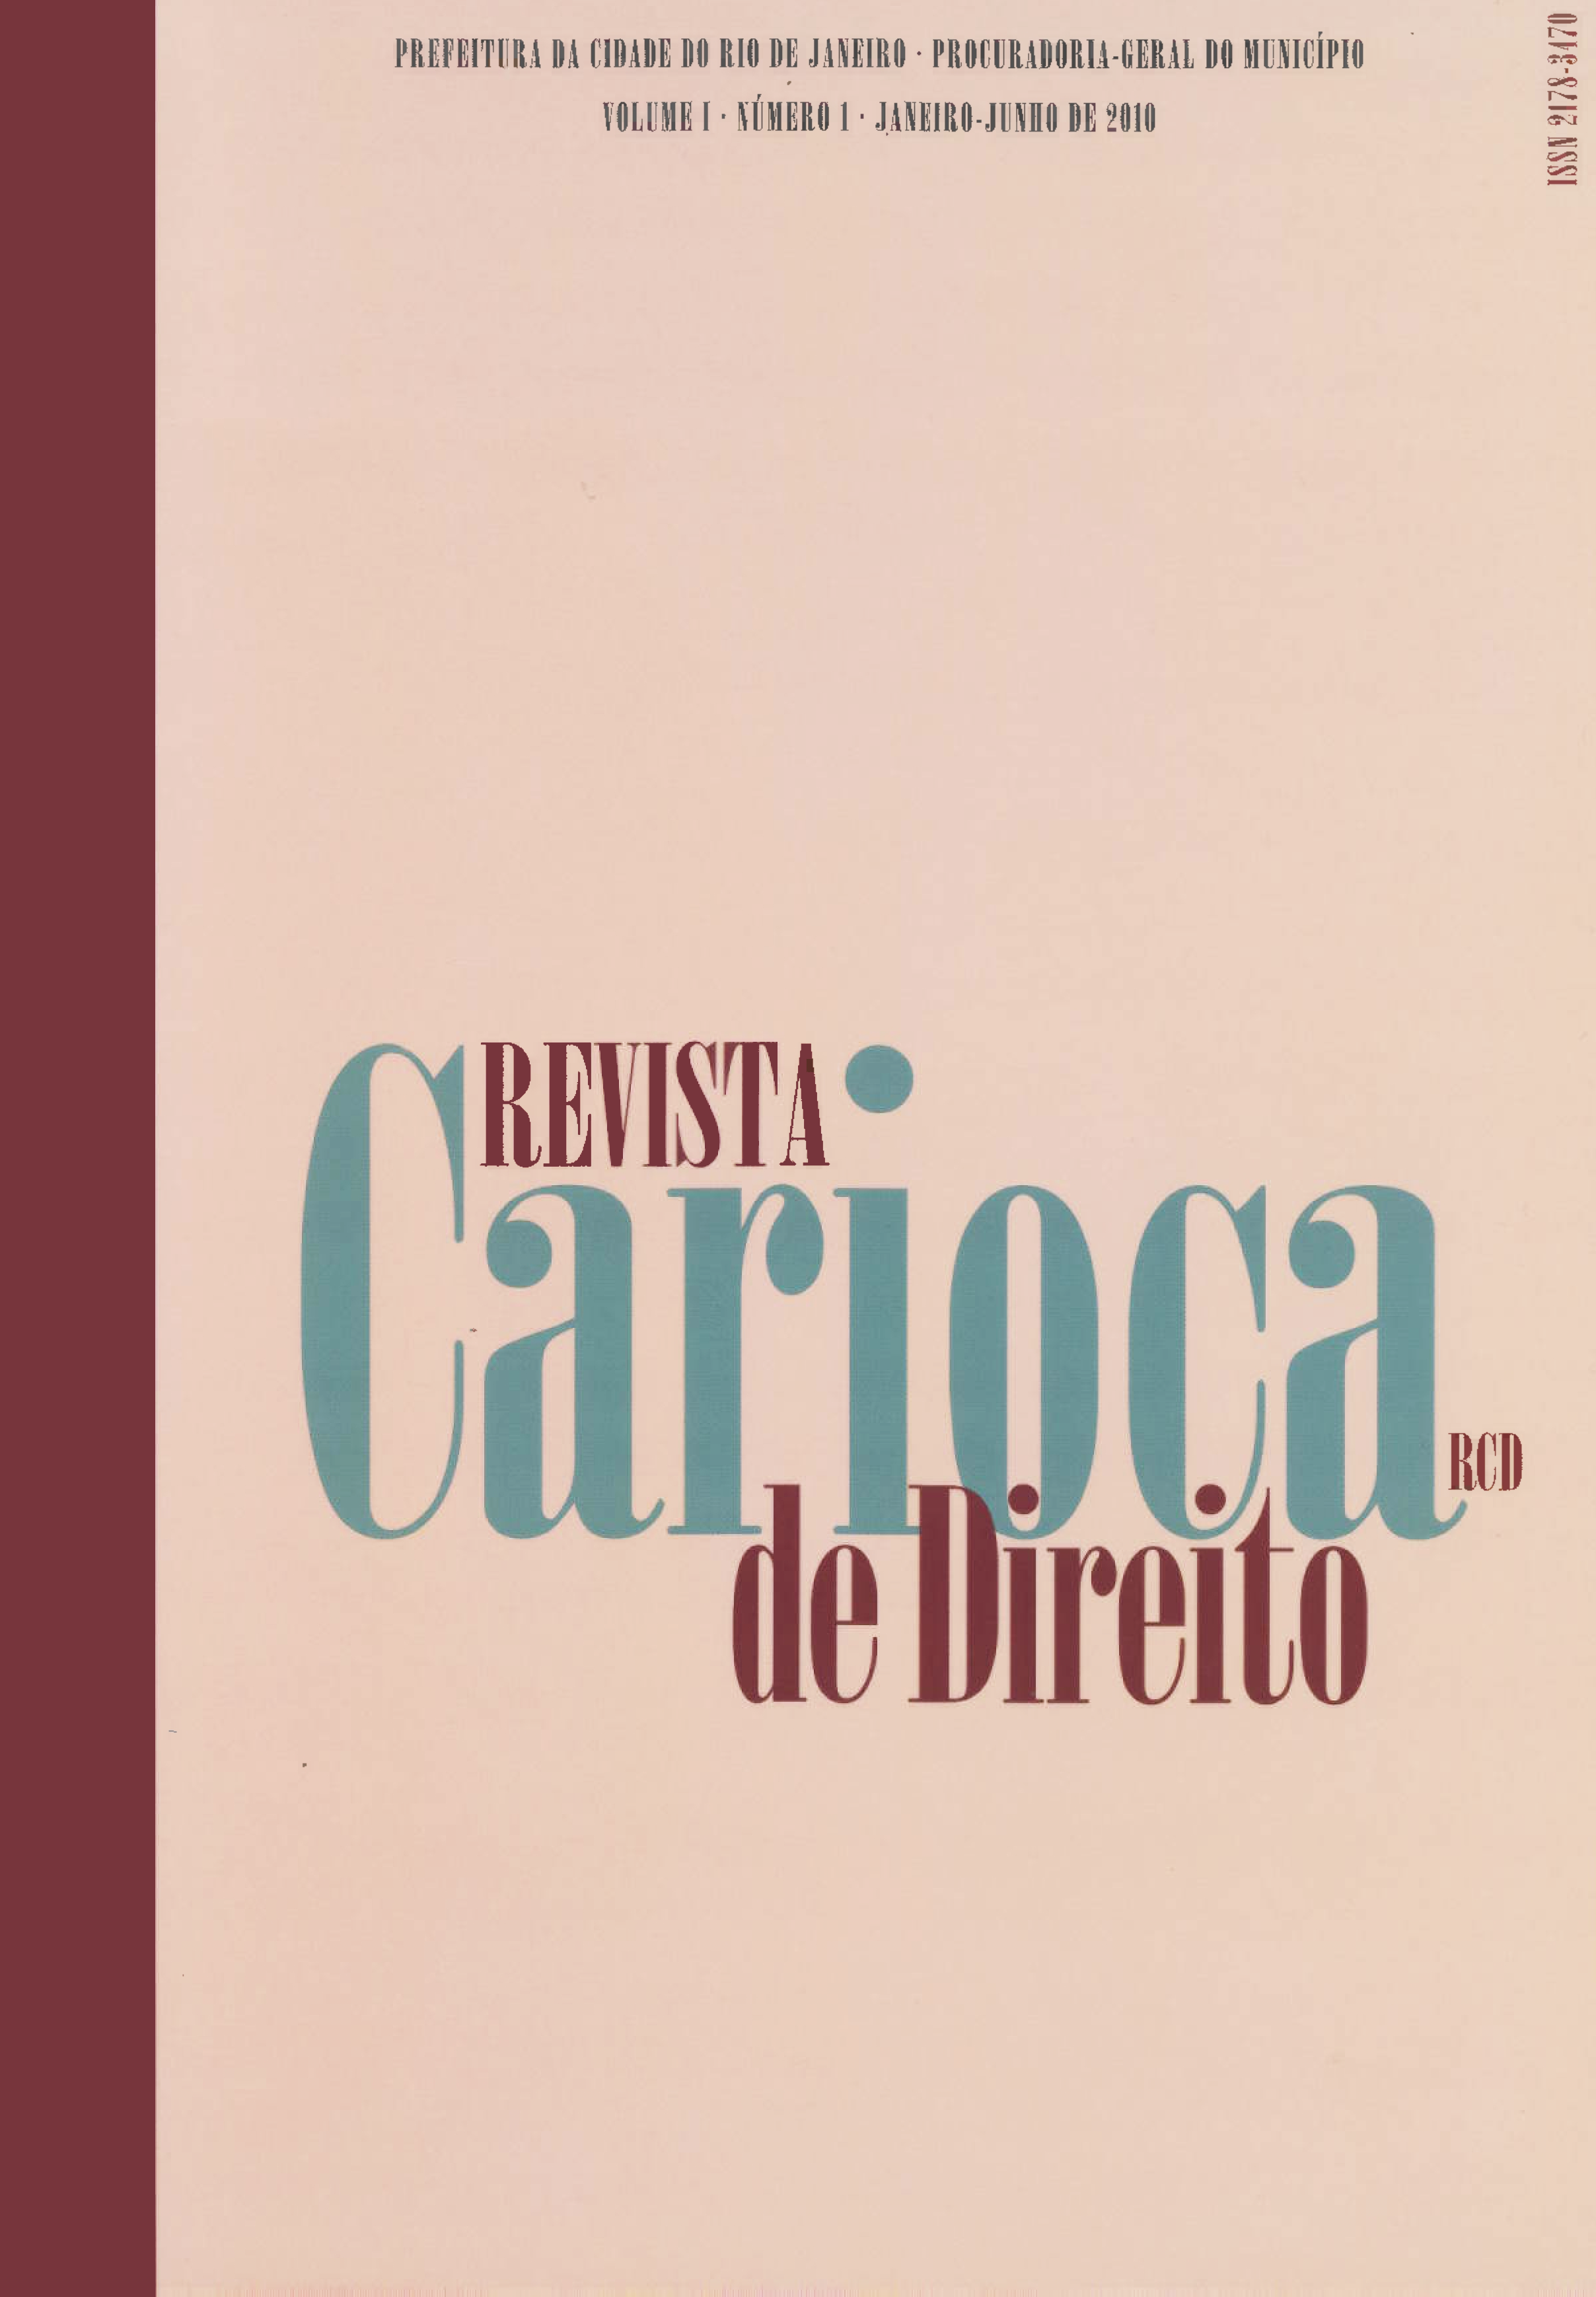 					Visualizar v. 1 n. 1 (2010): Revista Carioca de Direito
				